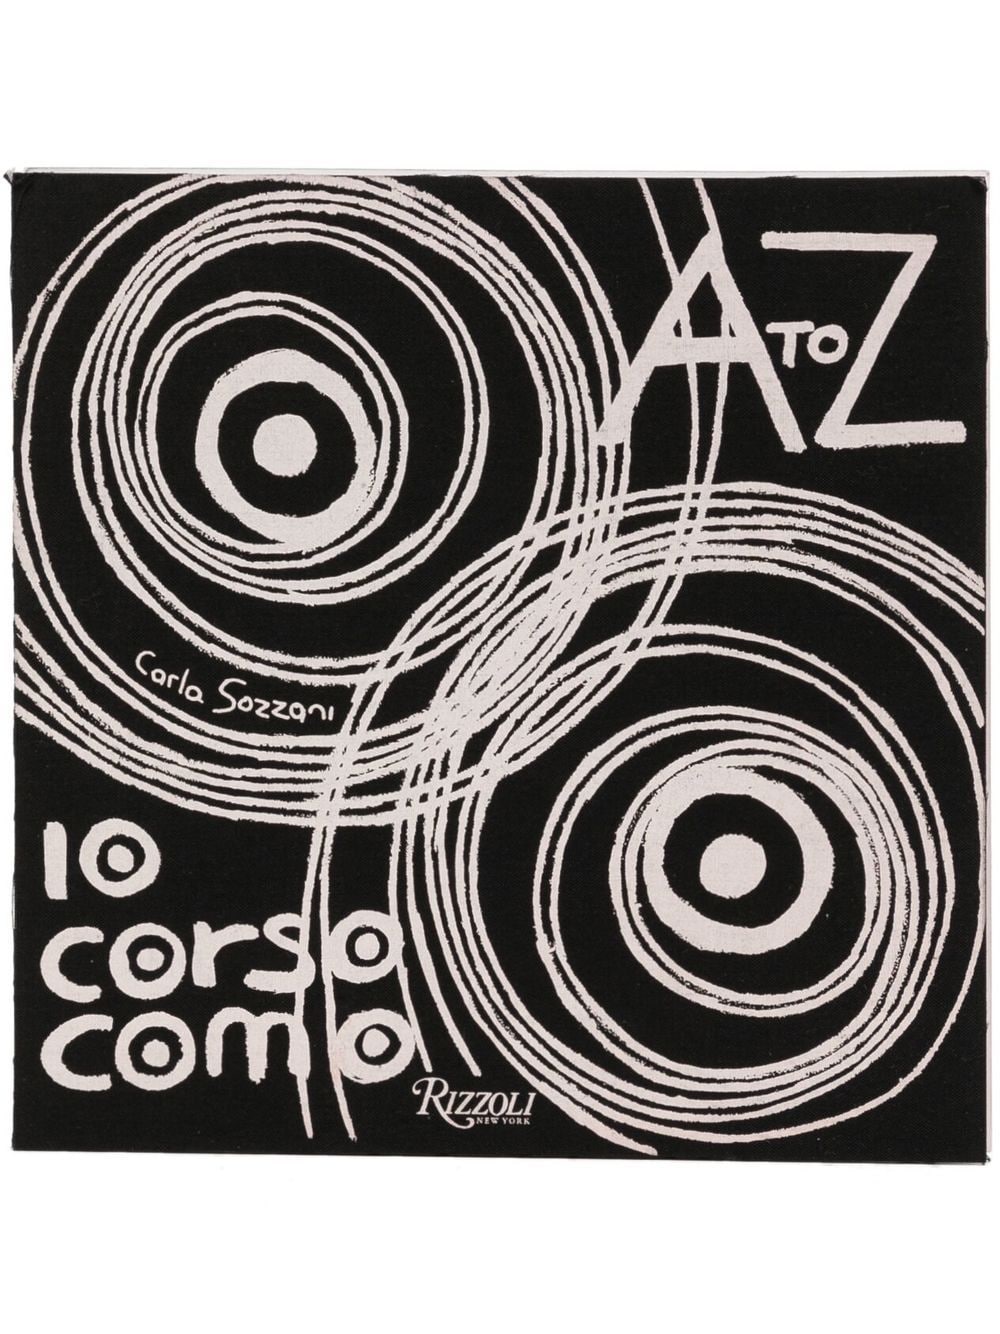 Shop Rizzoli 10 Corso Como: A To Z